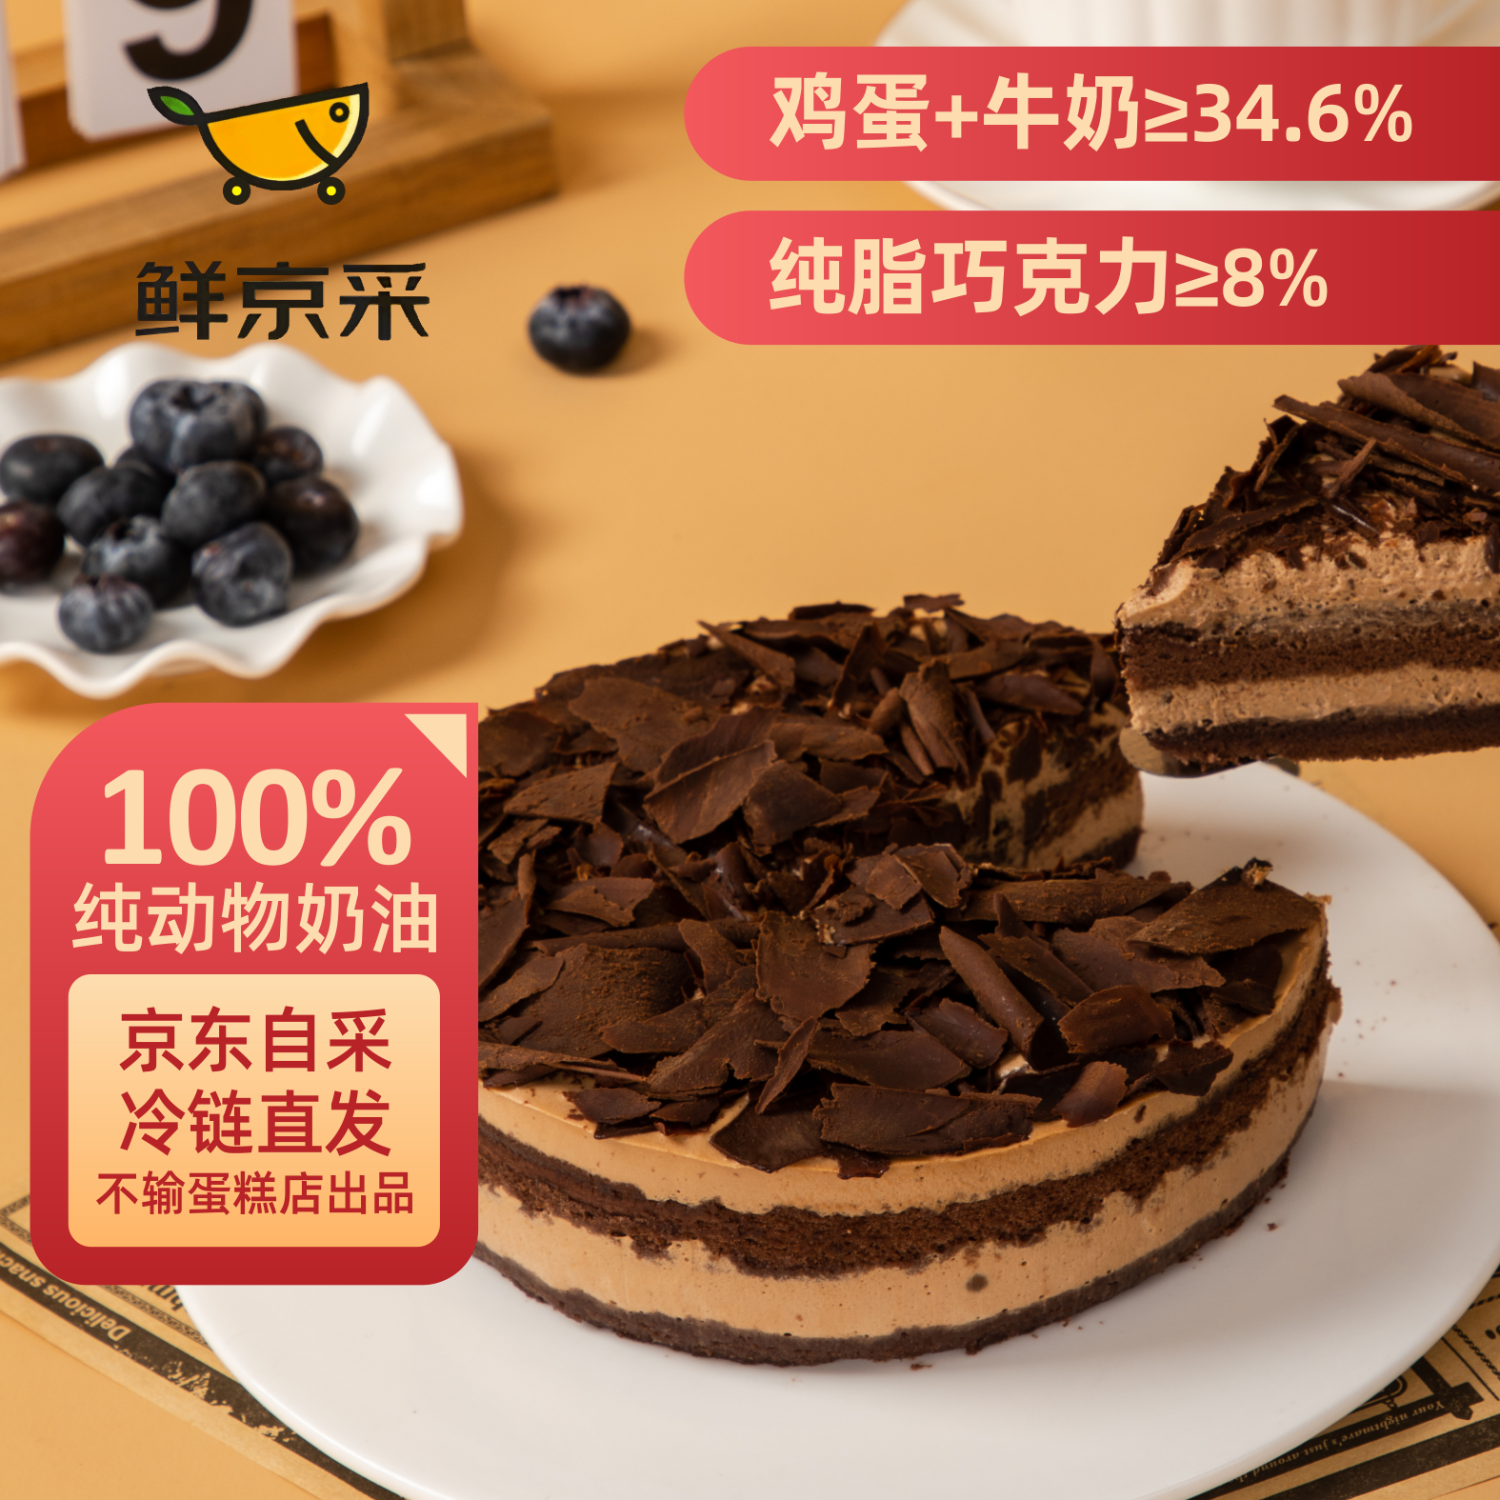 鲜京采 黑巧酪酪巧克力蛋糕 6寸 25.35元